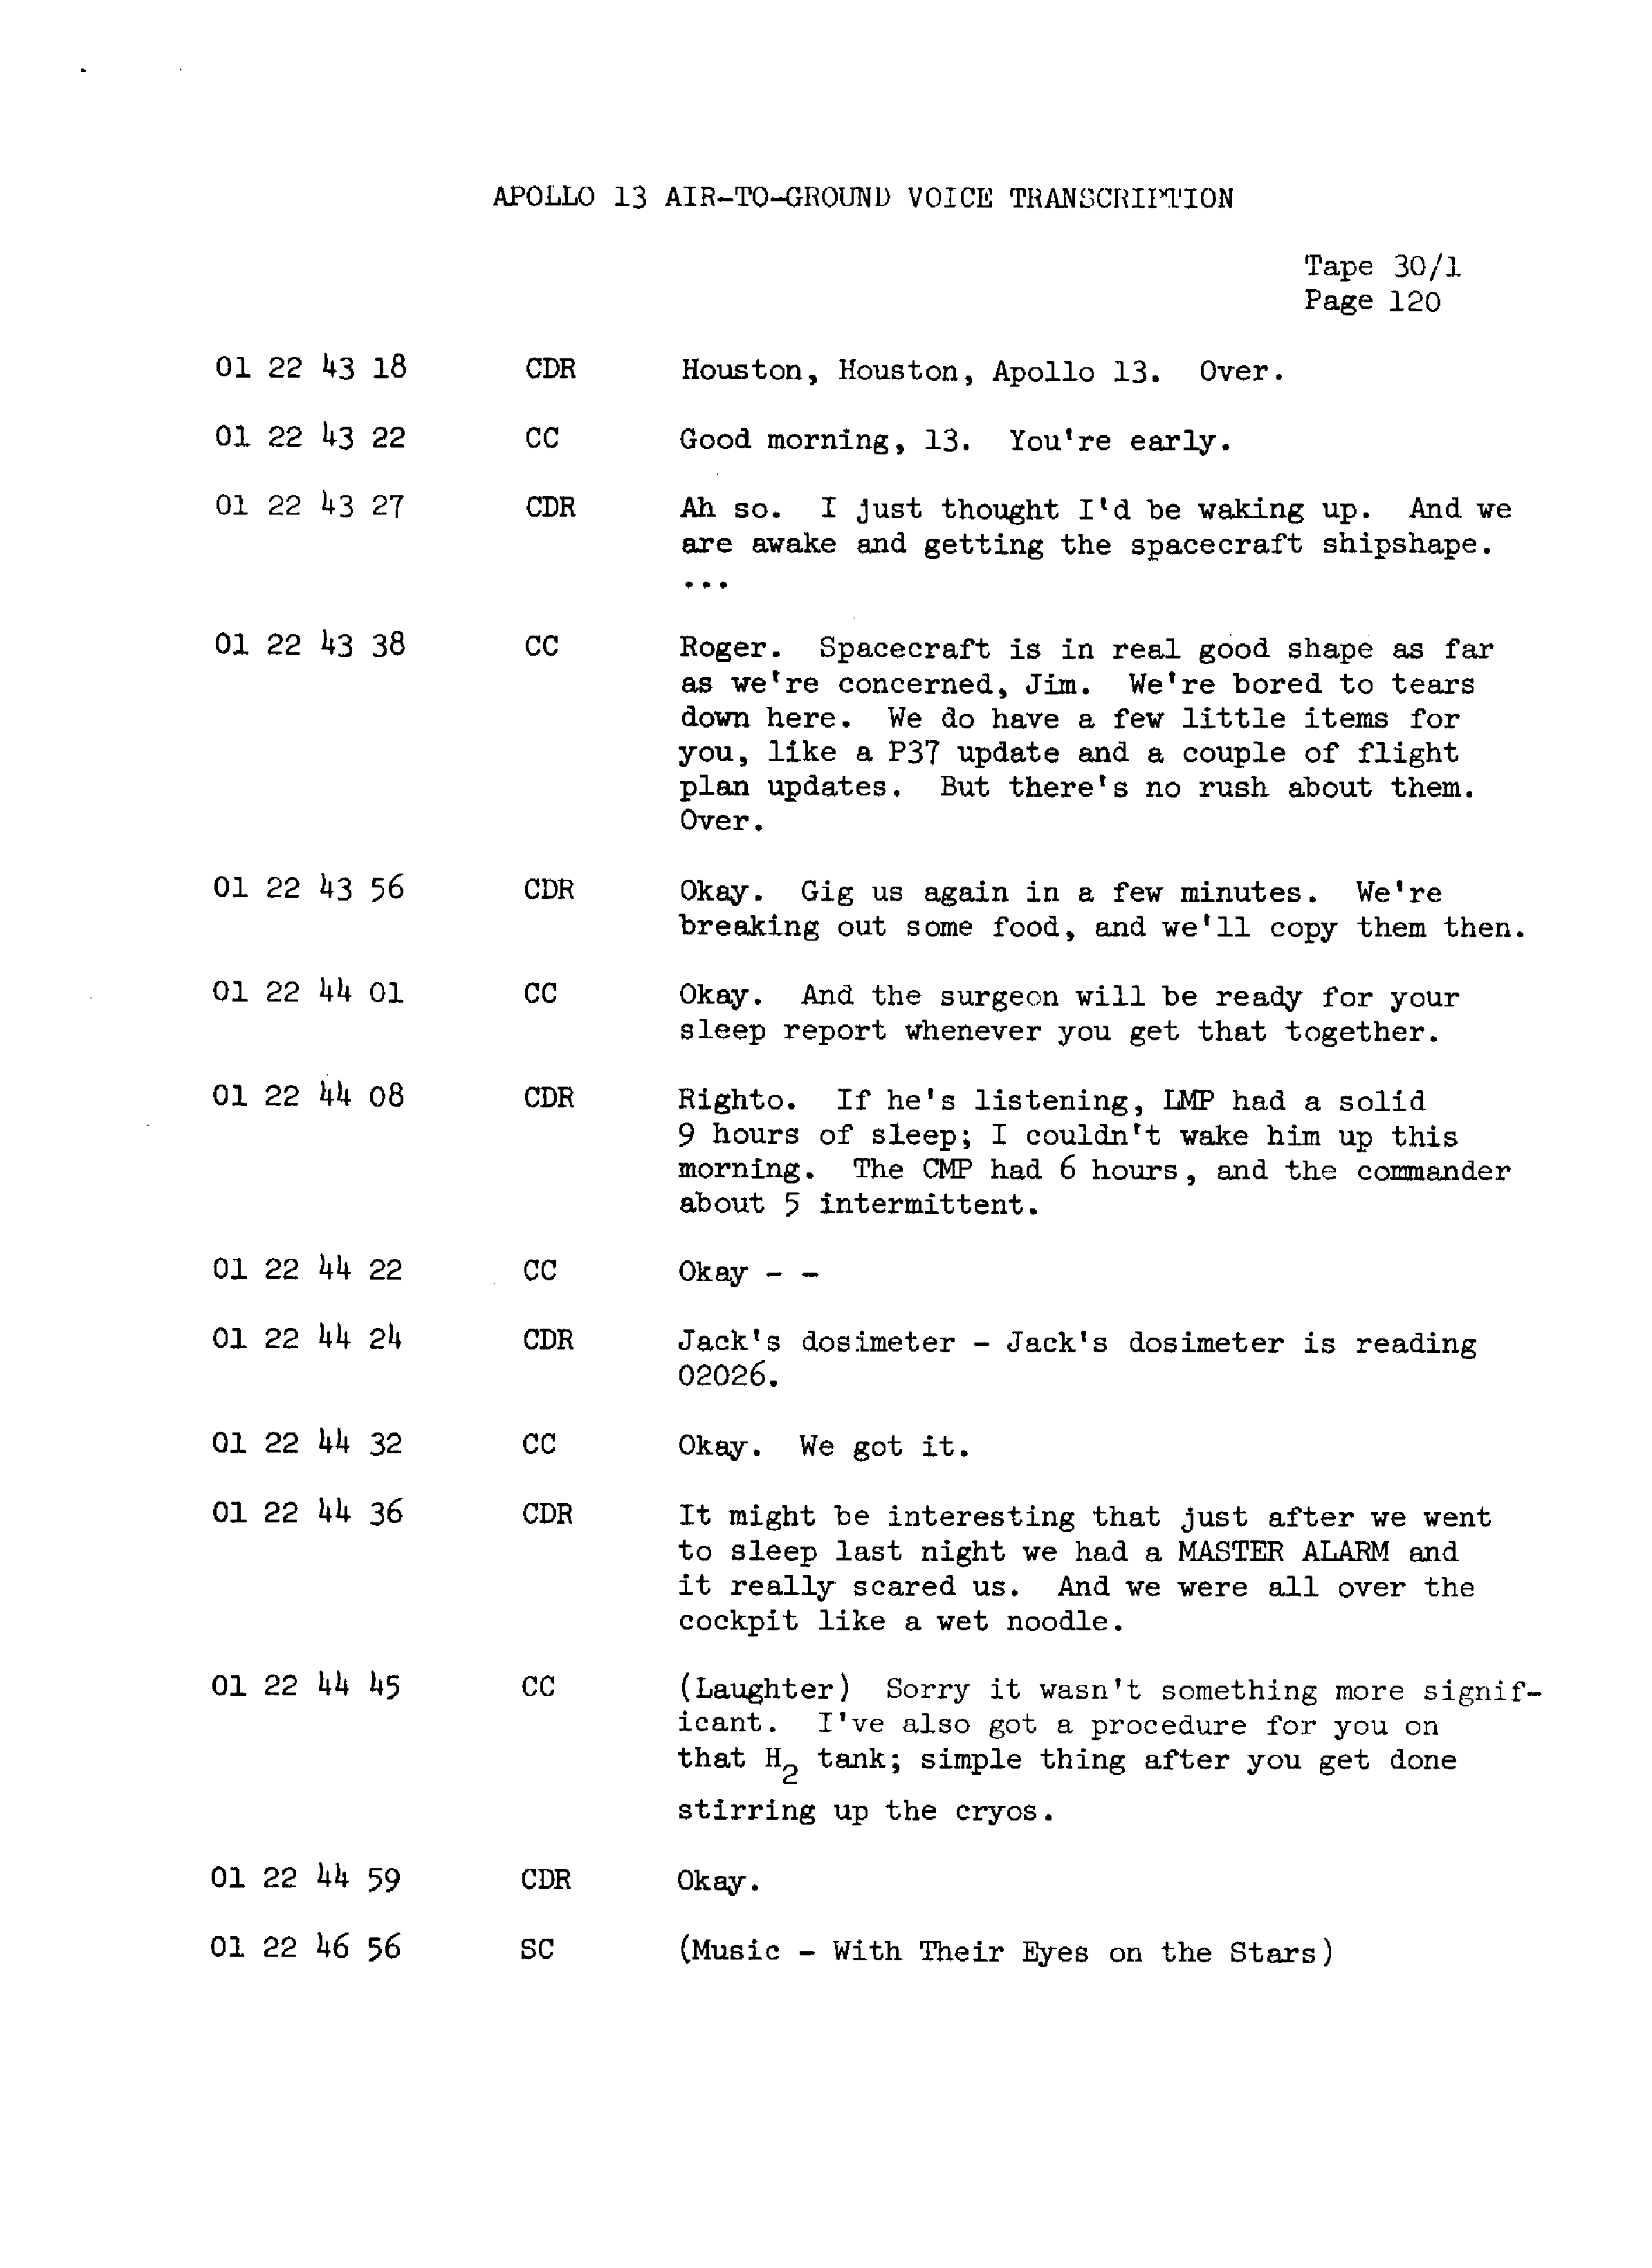 Page 127 of Apollo 13’s original transcript